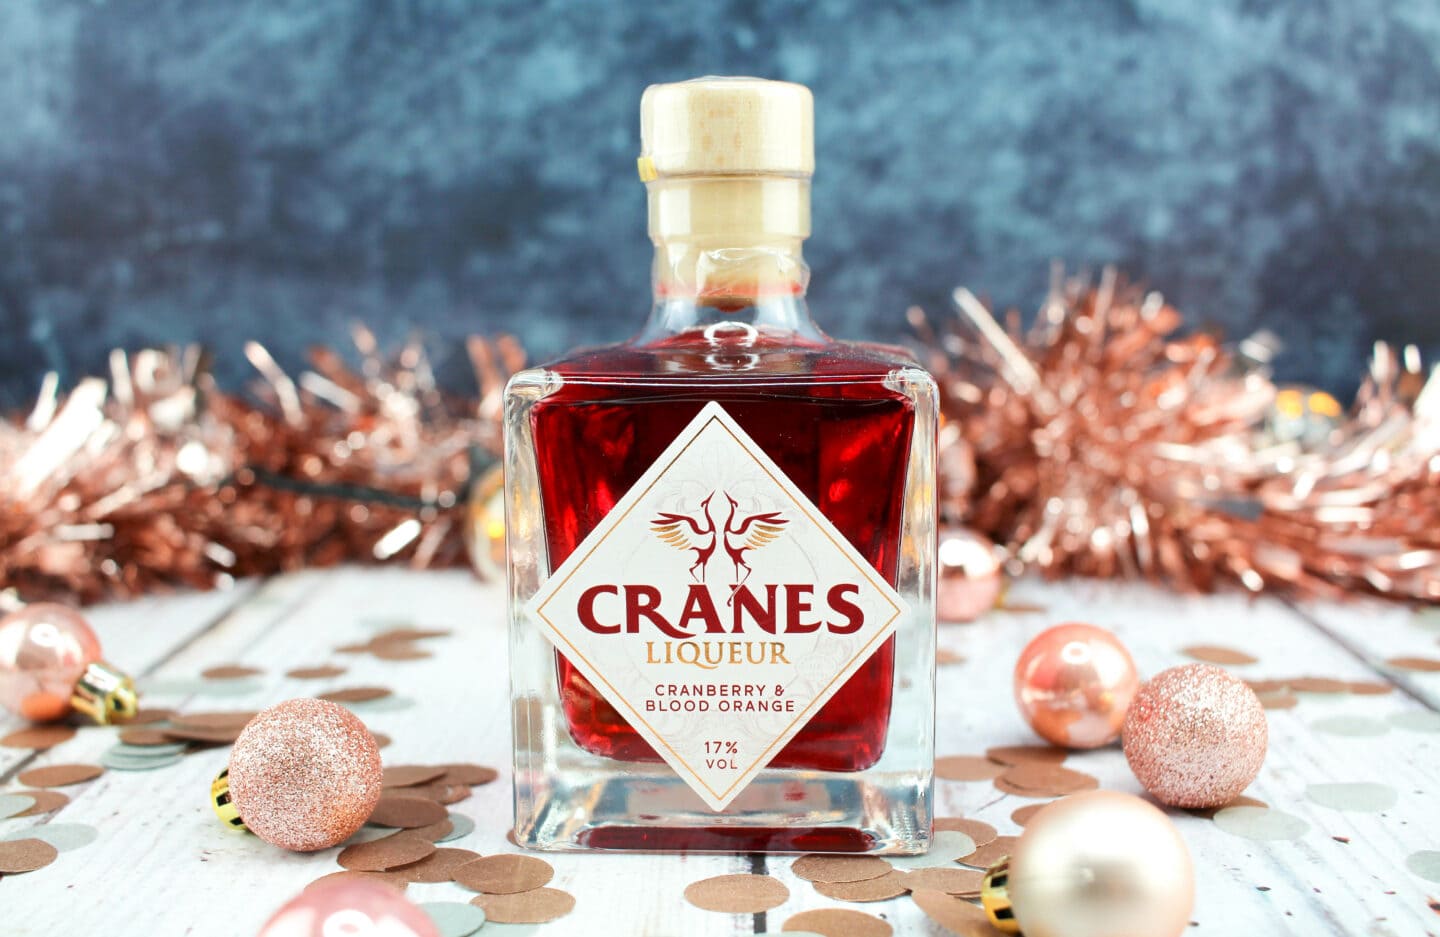 Cranes Cranberry & Blood Orange Liqueur RRP £9.00